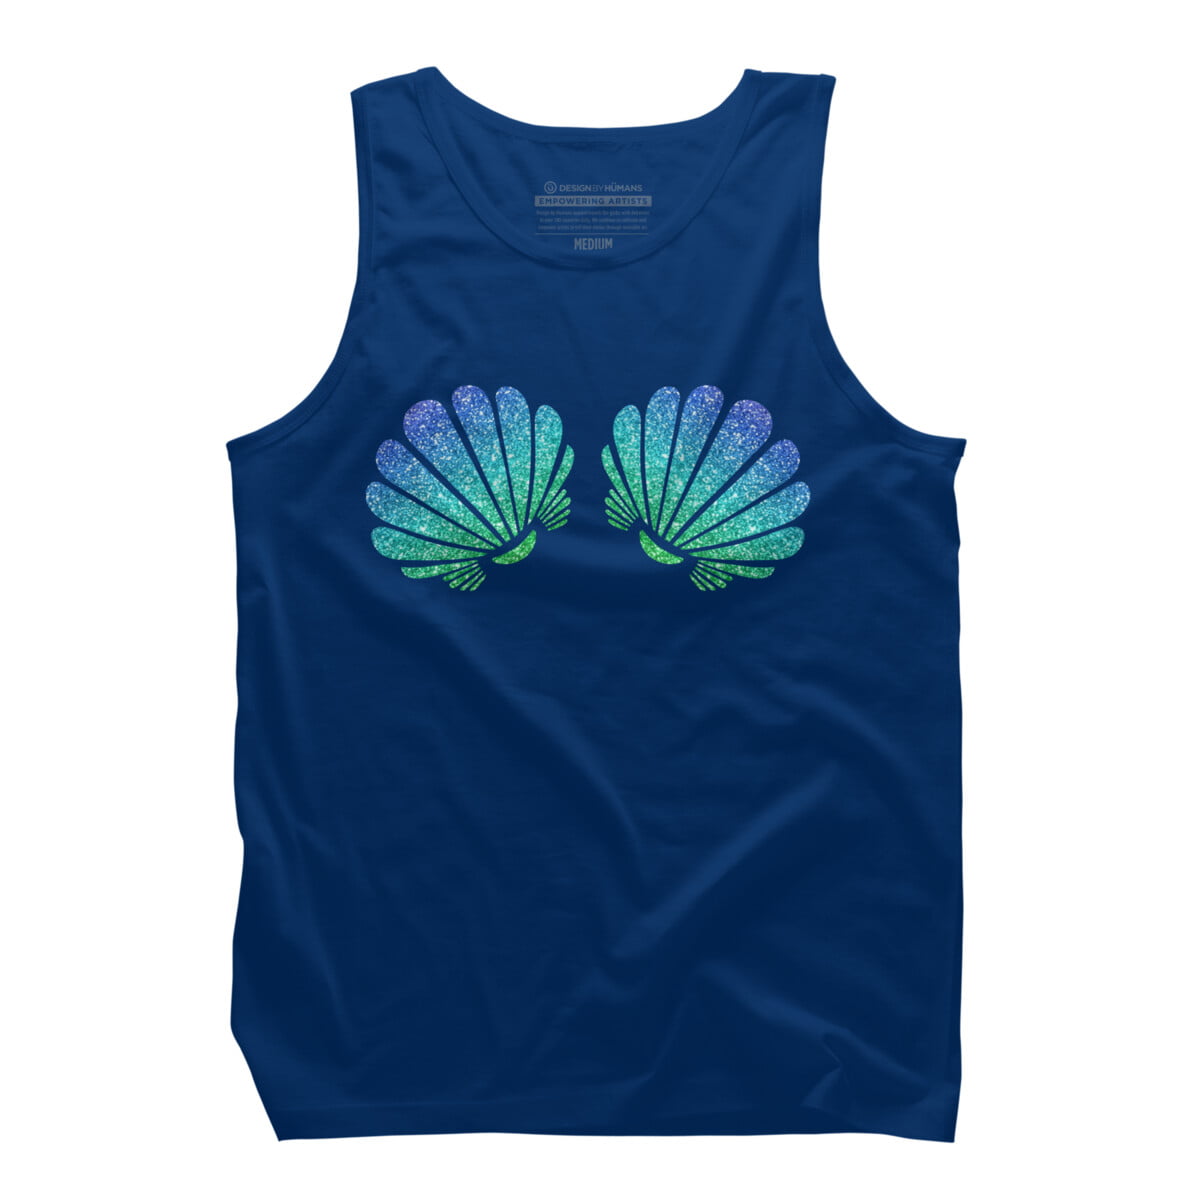 Sea Mermaid Shell Bra Top Shirts